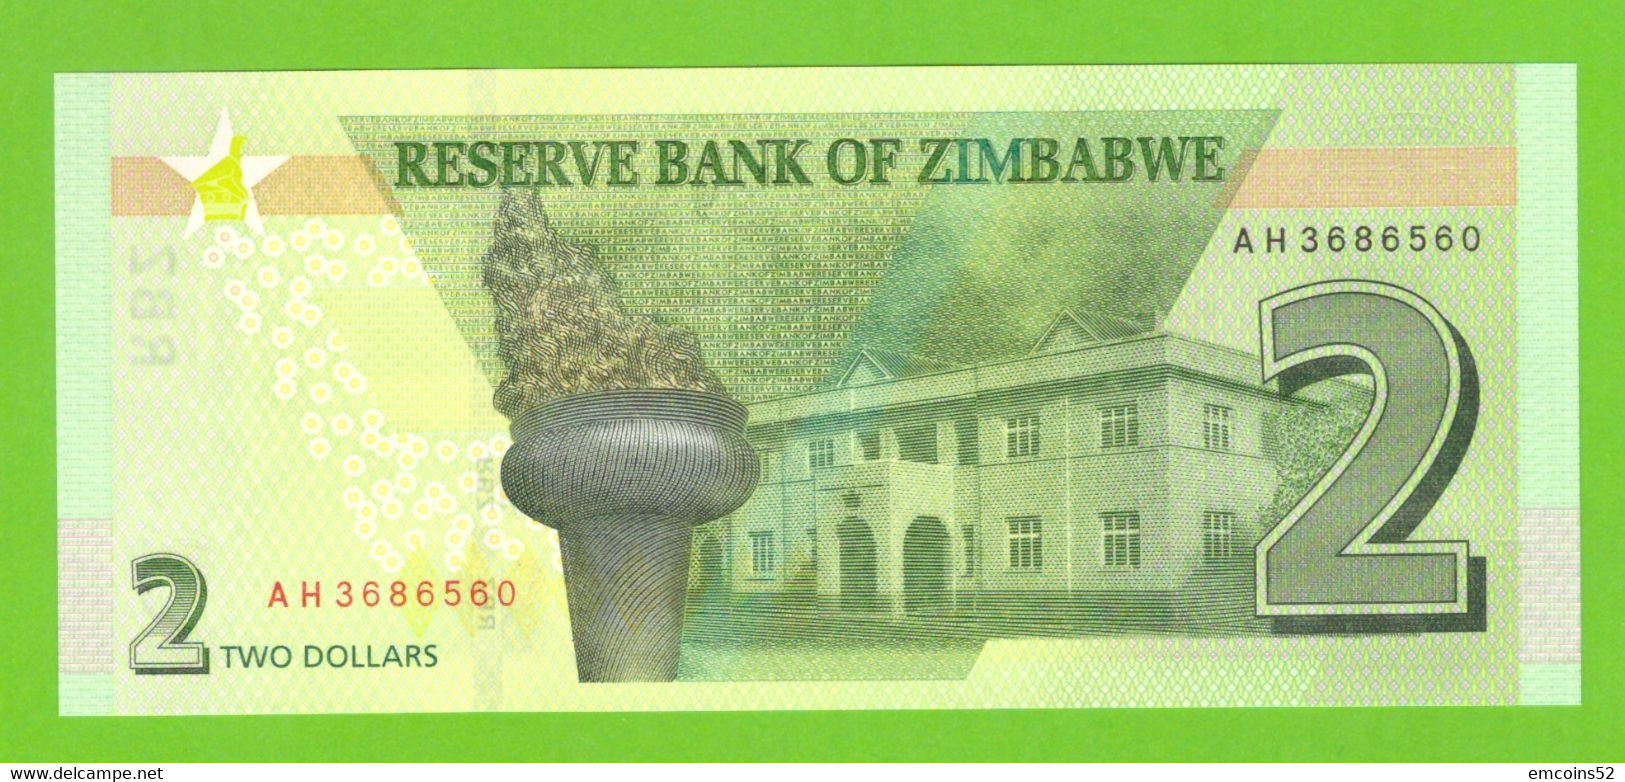 ZIMBABWE 2 DOLLARS 2019  P-W101 UNC - Zimbabwe